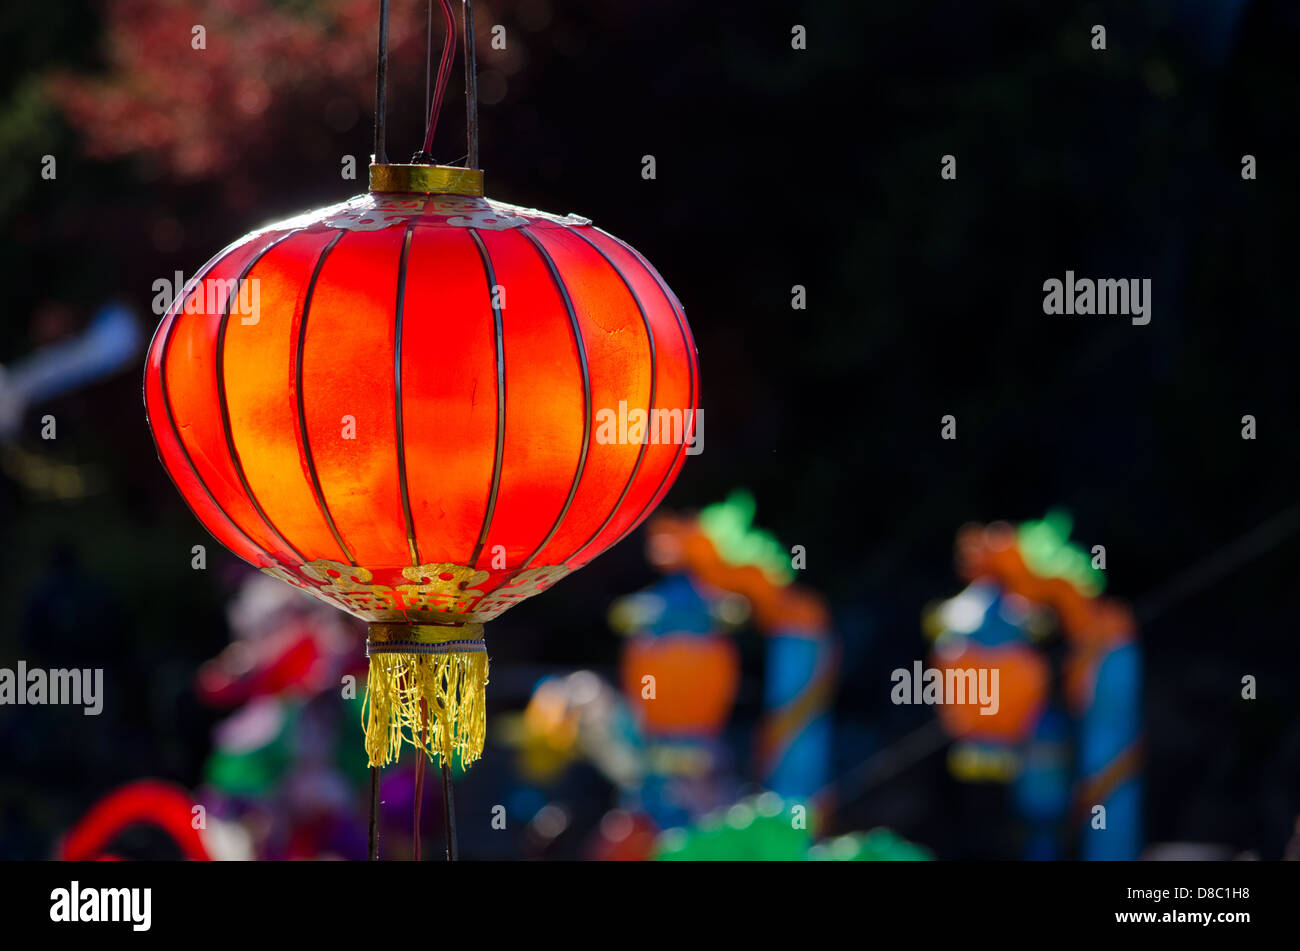 Lanterne chinoise rouge sur un fond sombre Banque D'Images